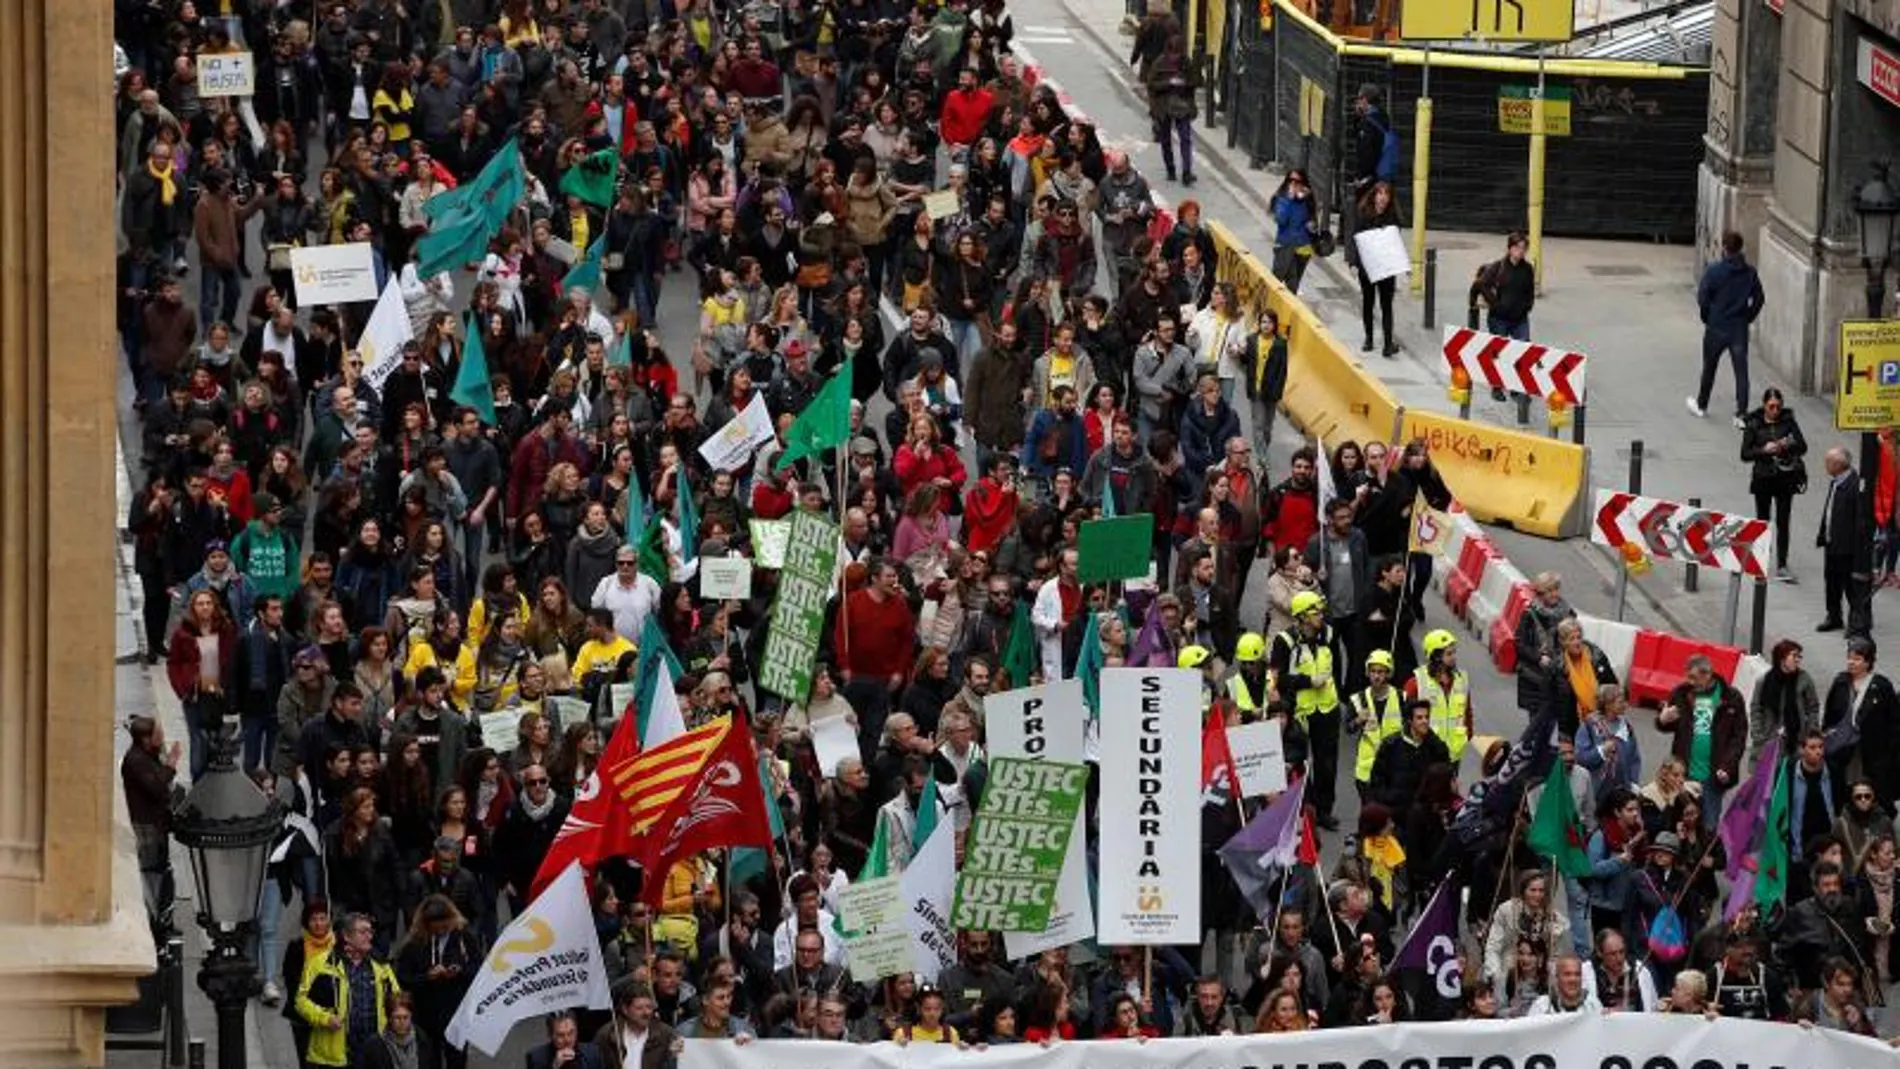 Empleados públicos y estudiantes se manifiestan en Barcelona contra los recortes